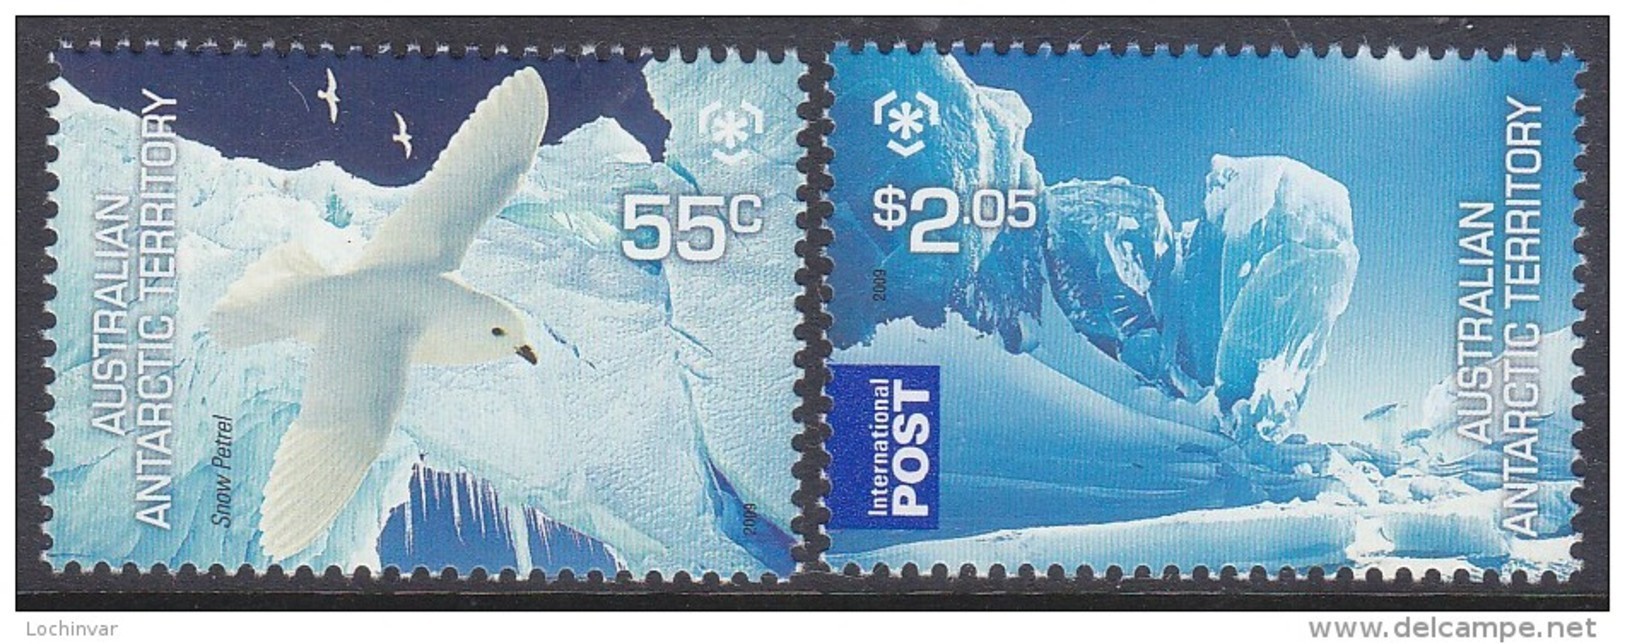 AAT, 2009 POLES/GLACIERS 2 MNH - Unused Stamps